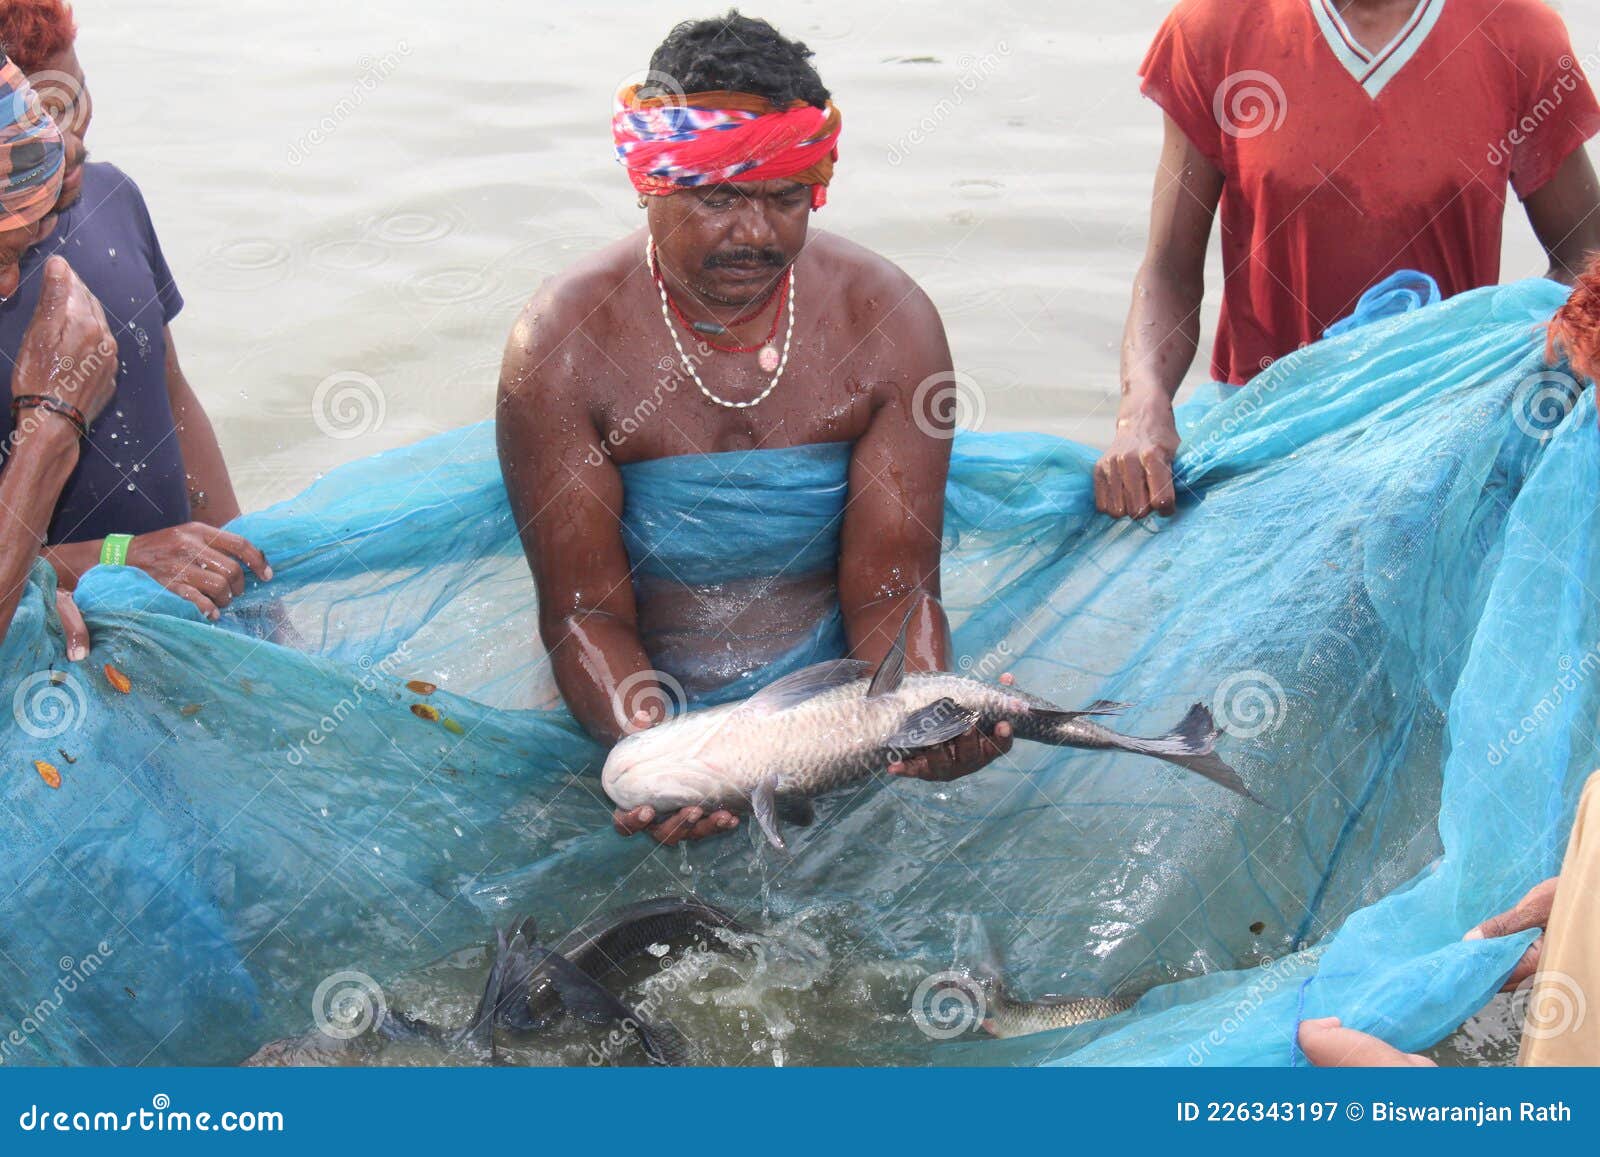 Fishermen Catching Big Fish in Net Community Fishing in Asia Hd